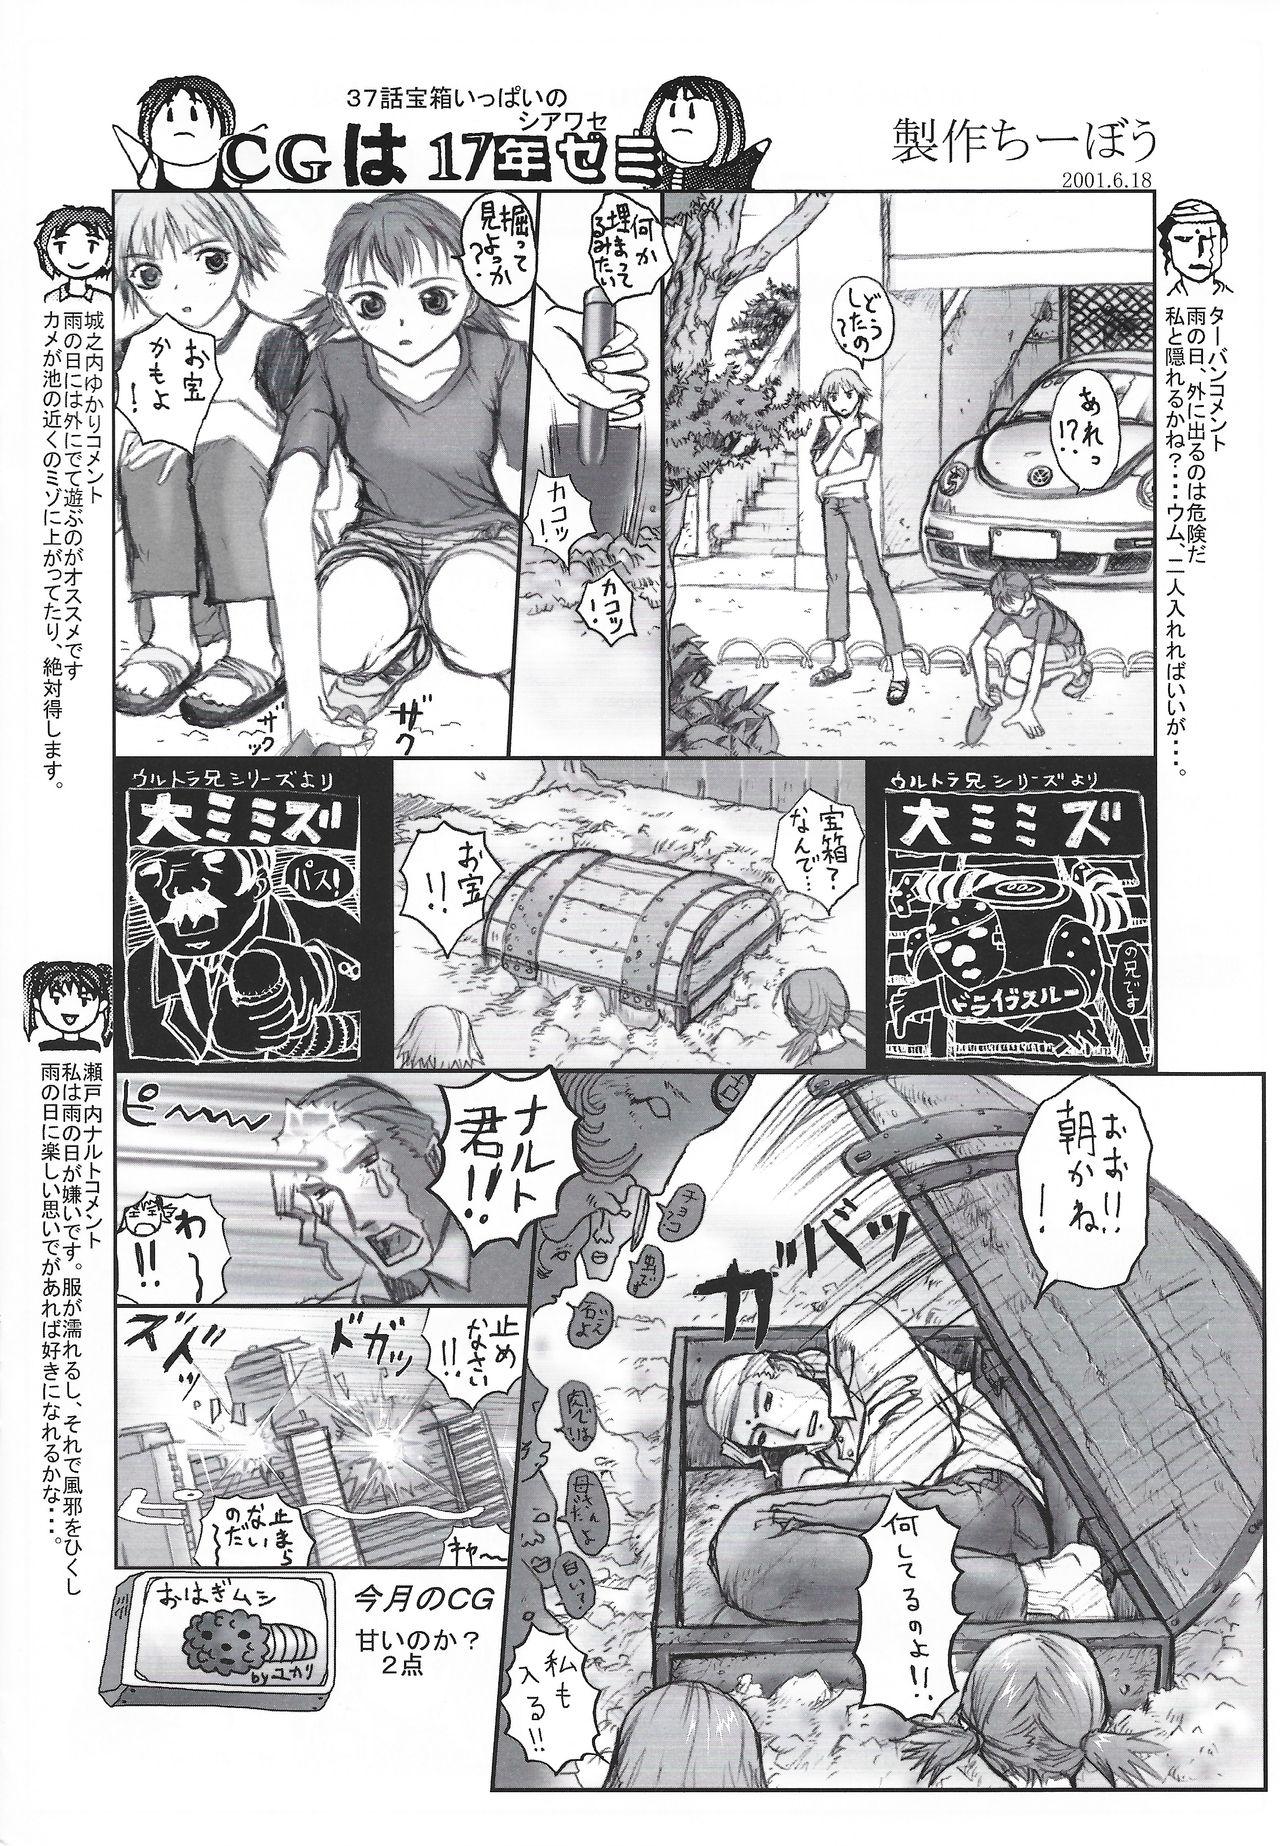 Arisu no Denchi Bakudan Vol. 18 14